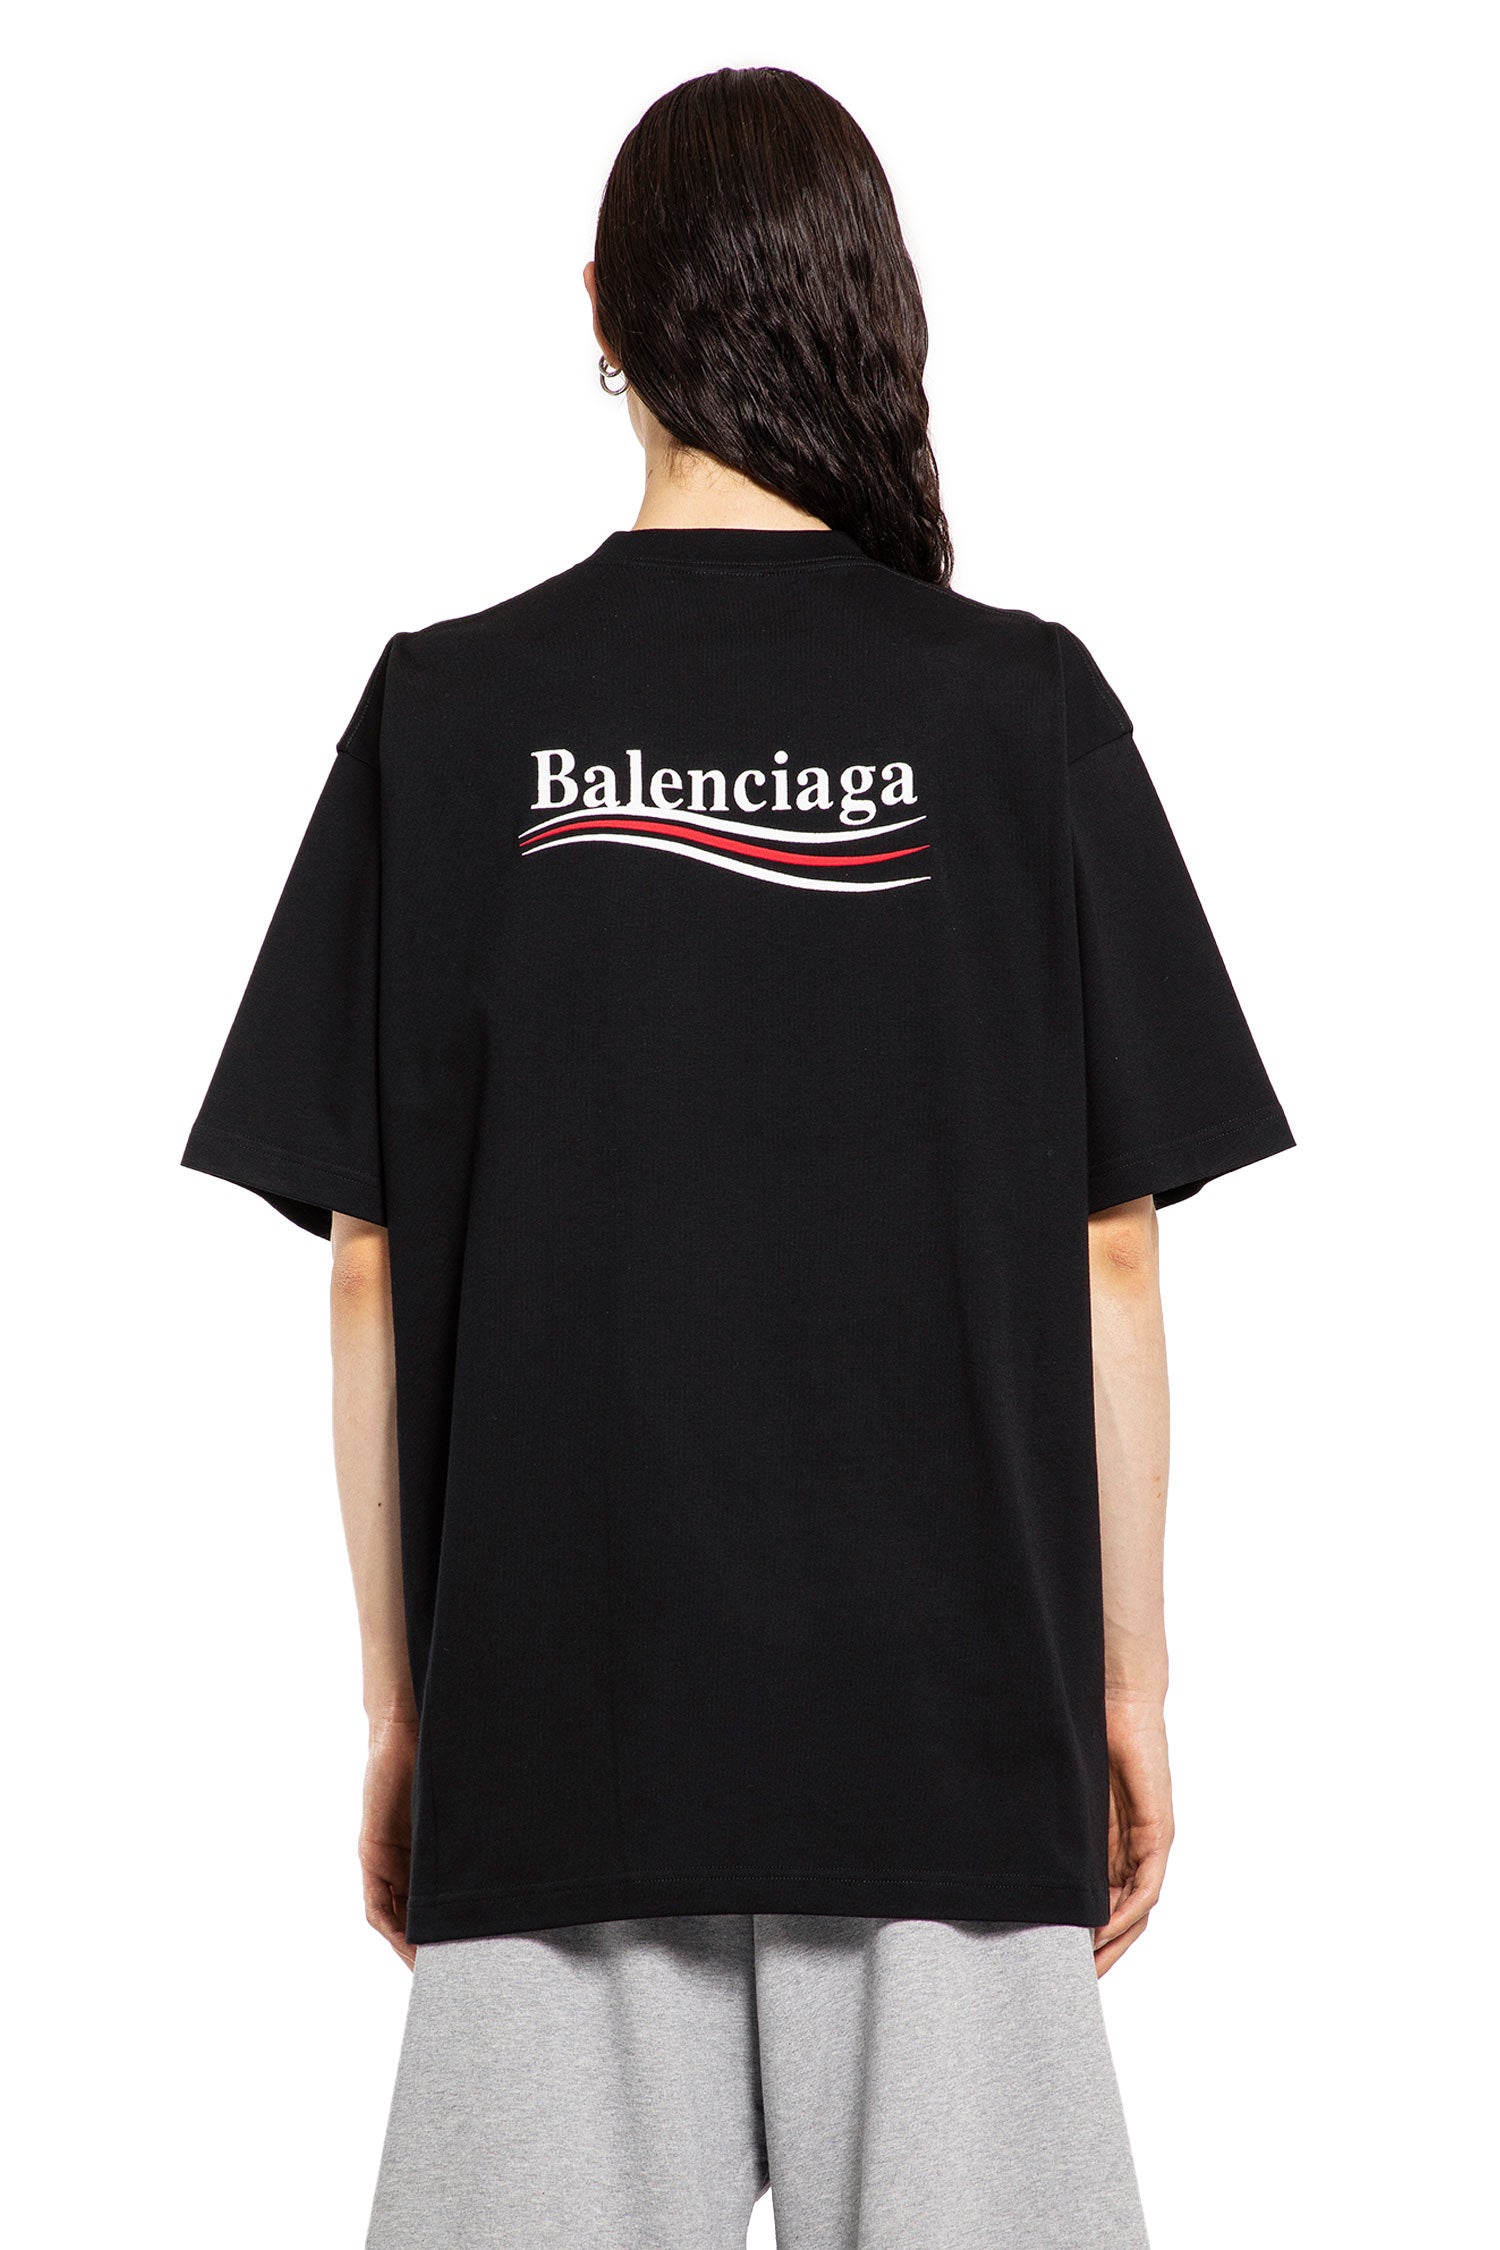 BALENCIAGA MAN BLACK T-SHIRTS & TANK TOPS